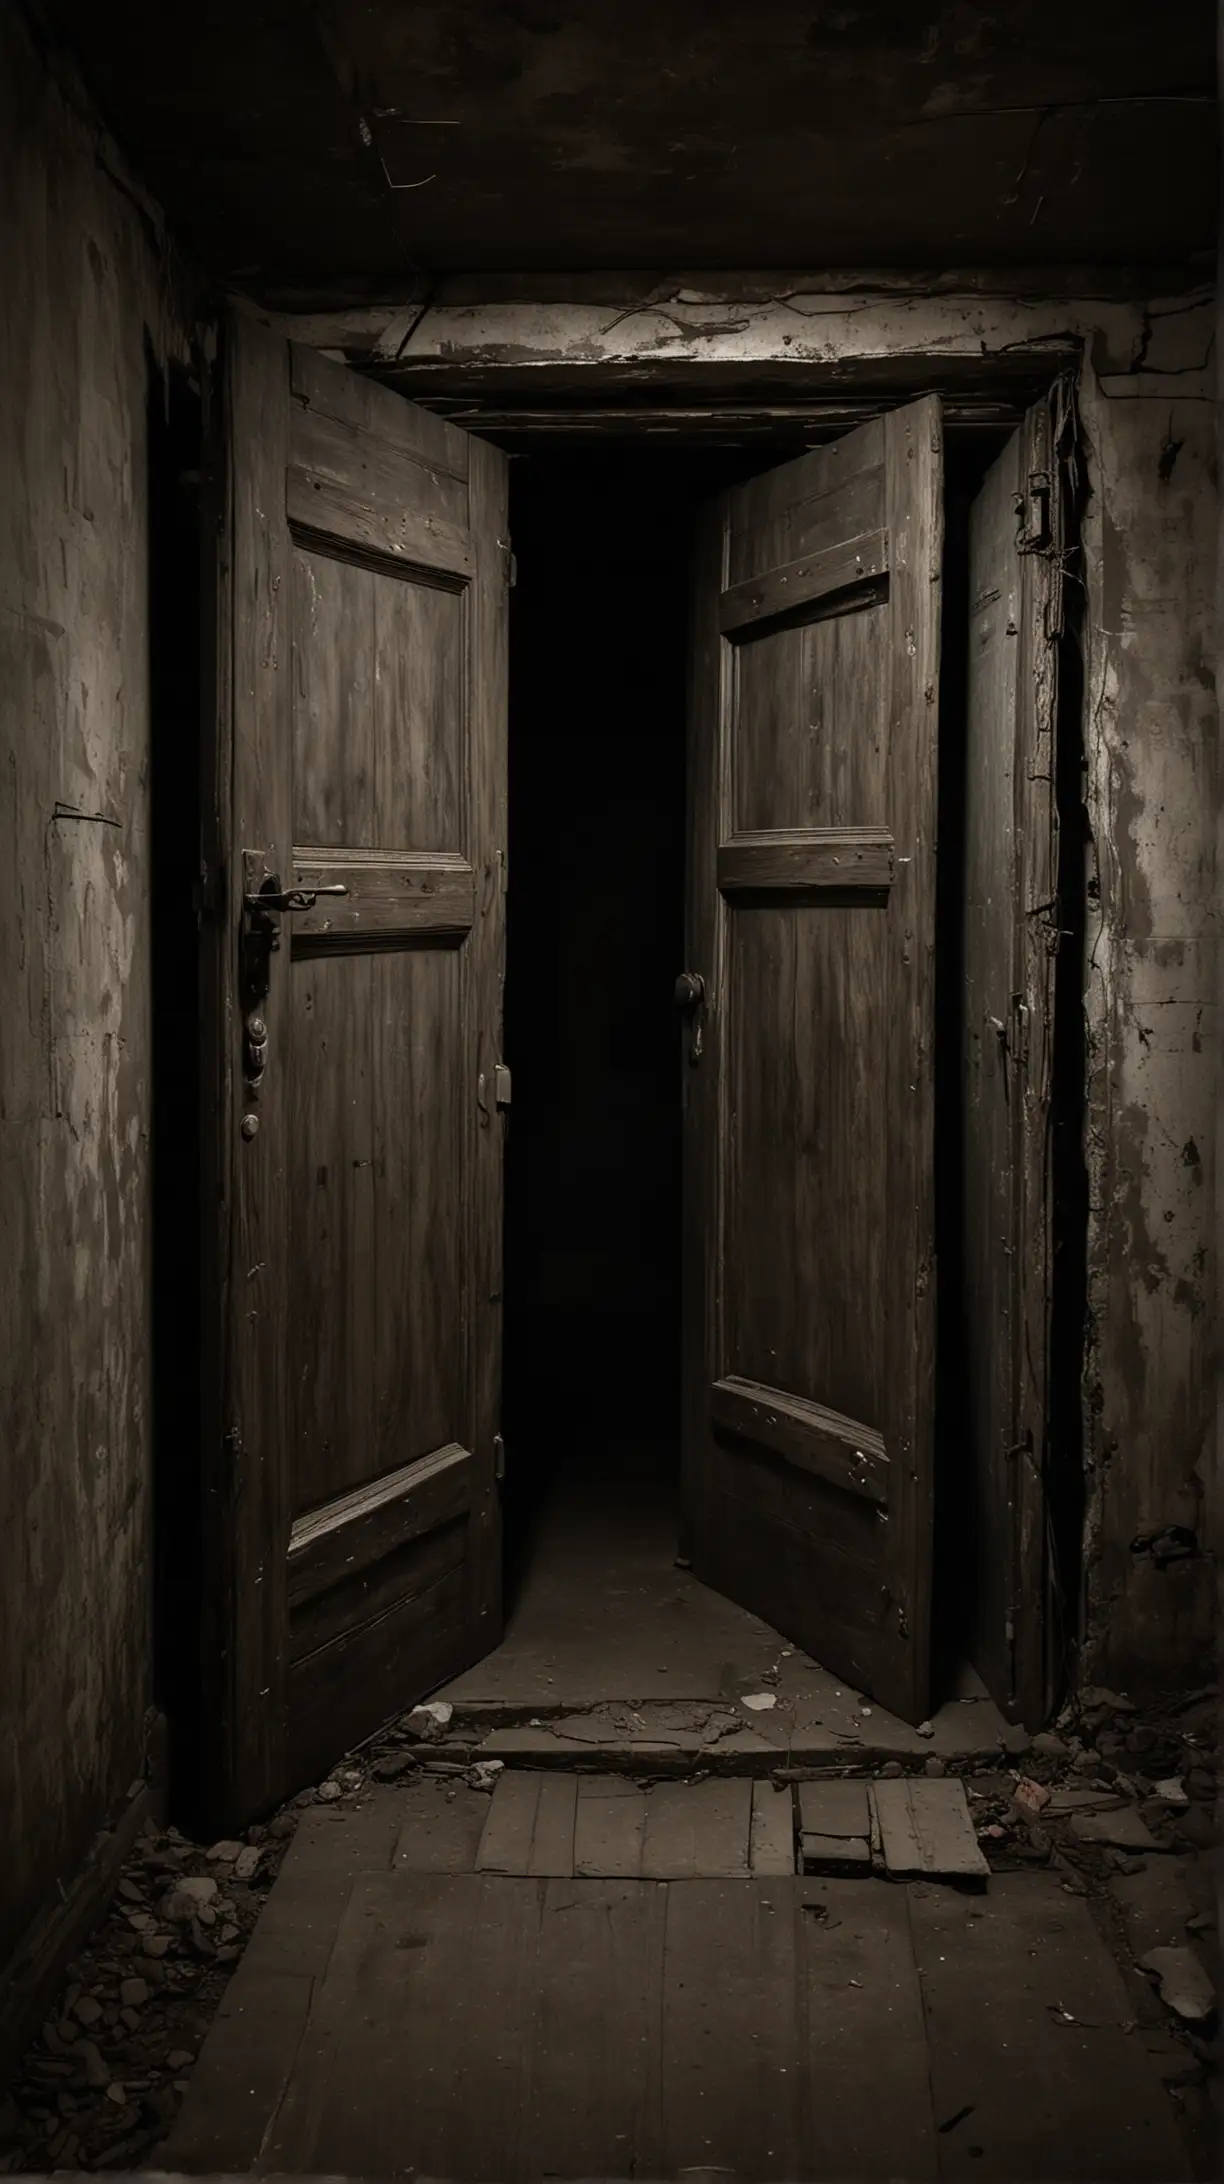 Eerie Basement with Dark Doors in Shadows